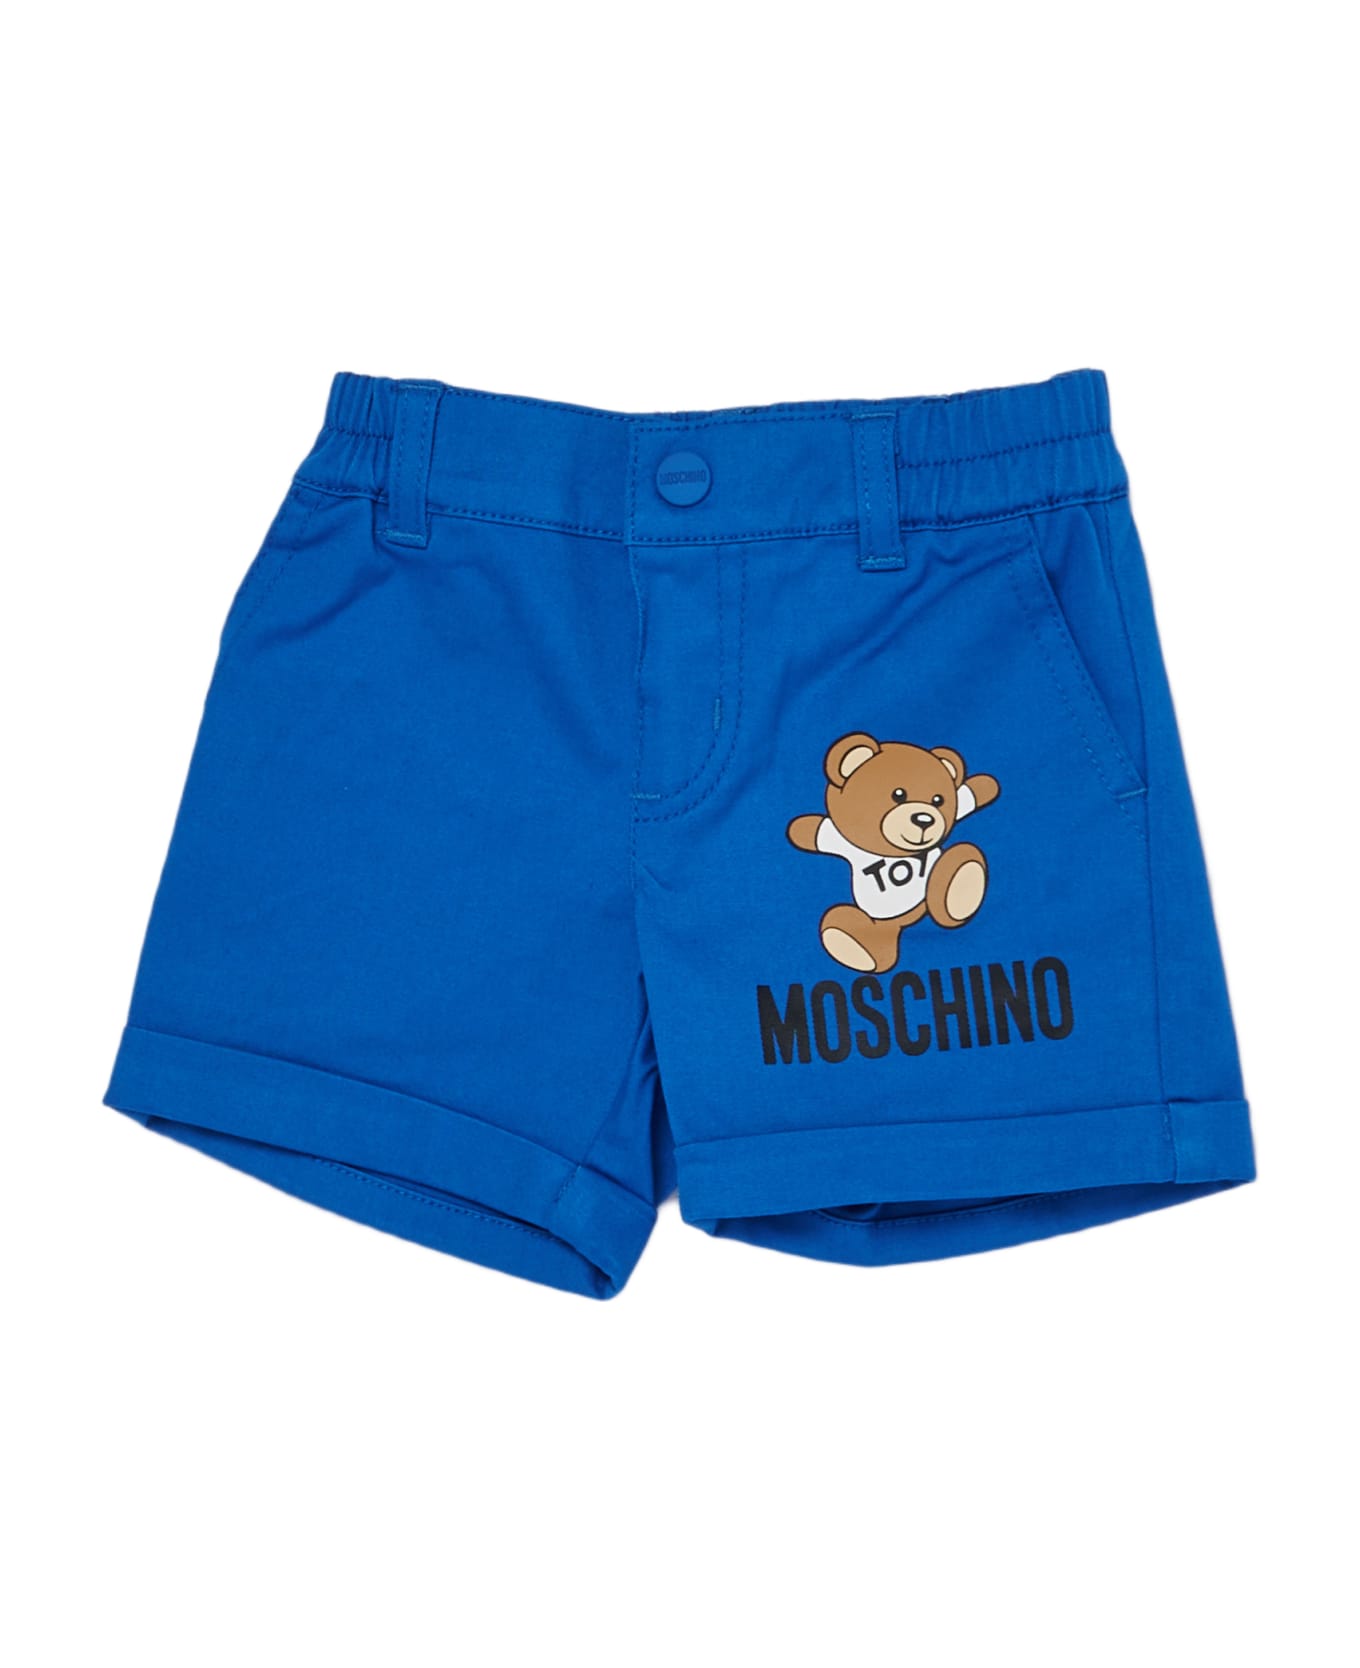 Moschino Shorts Shorts - AZZURRO ボトムス